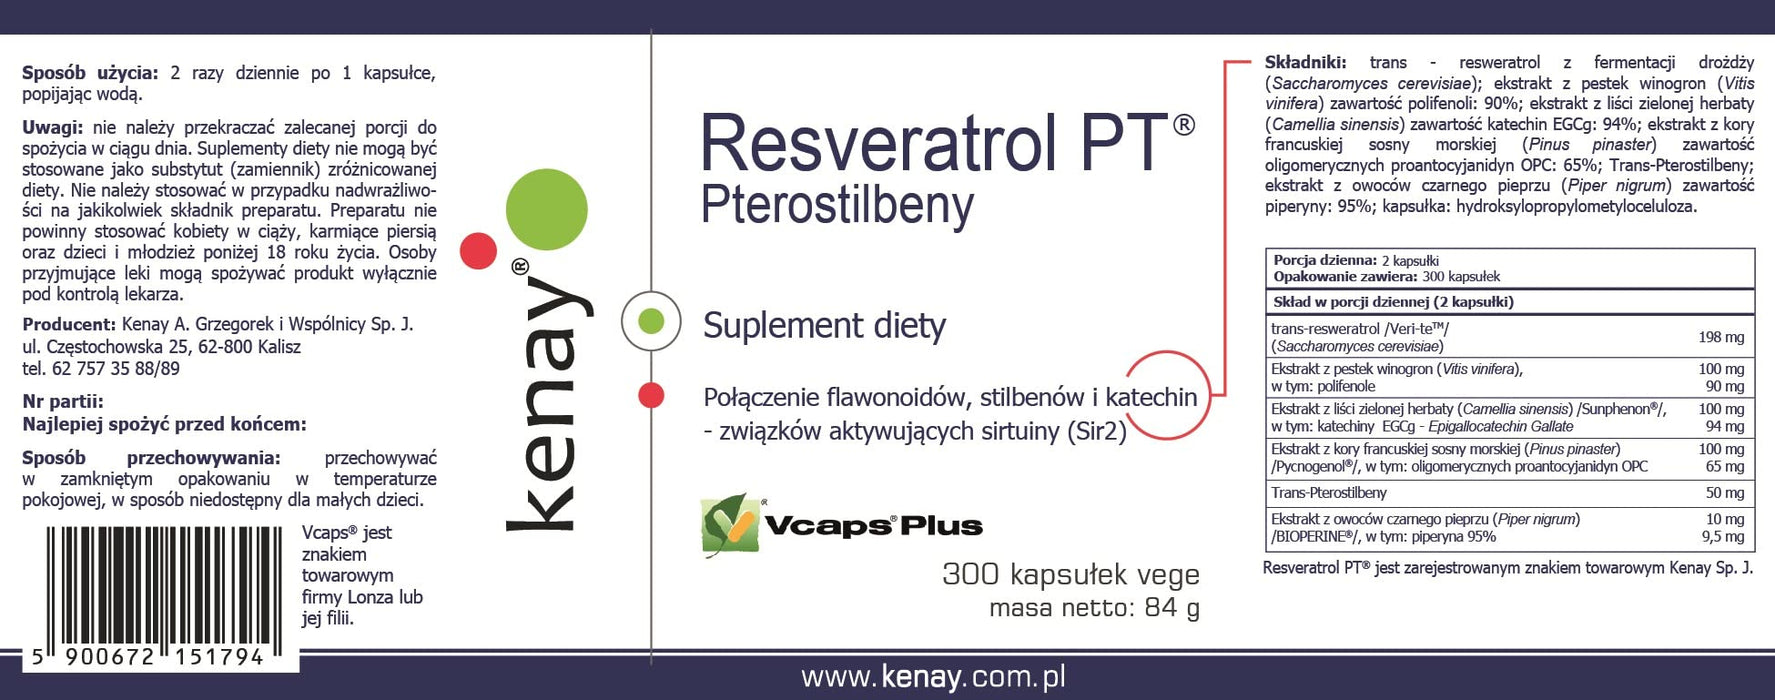 Kenay – Pterostilbeny – Resveratrol PT; 300 Kapsułek; Suplement diety; Zdrowie; Odporność; Sport; Trening; Antyoksydant; Przeciwutleniacz; Fitoaleksyny; Trening i Aktywny Tryb Życia